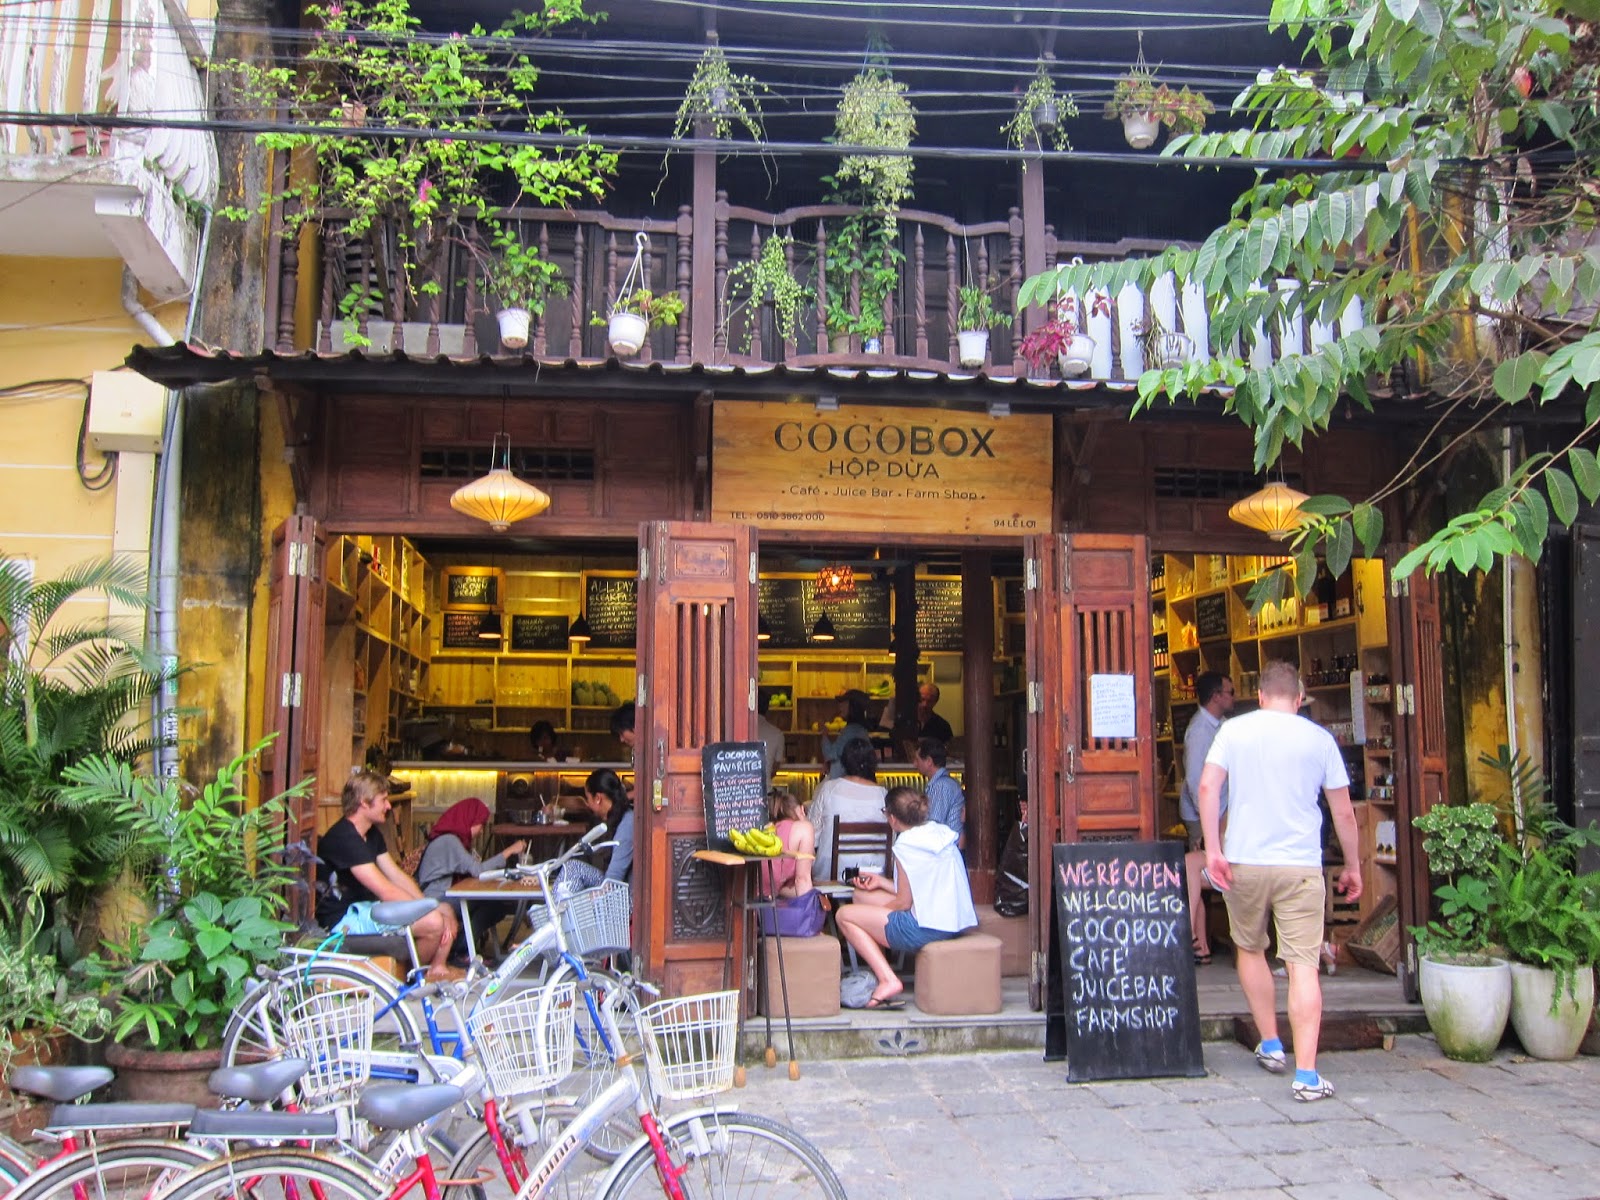 quán cà phê hội an - Cocobox